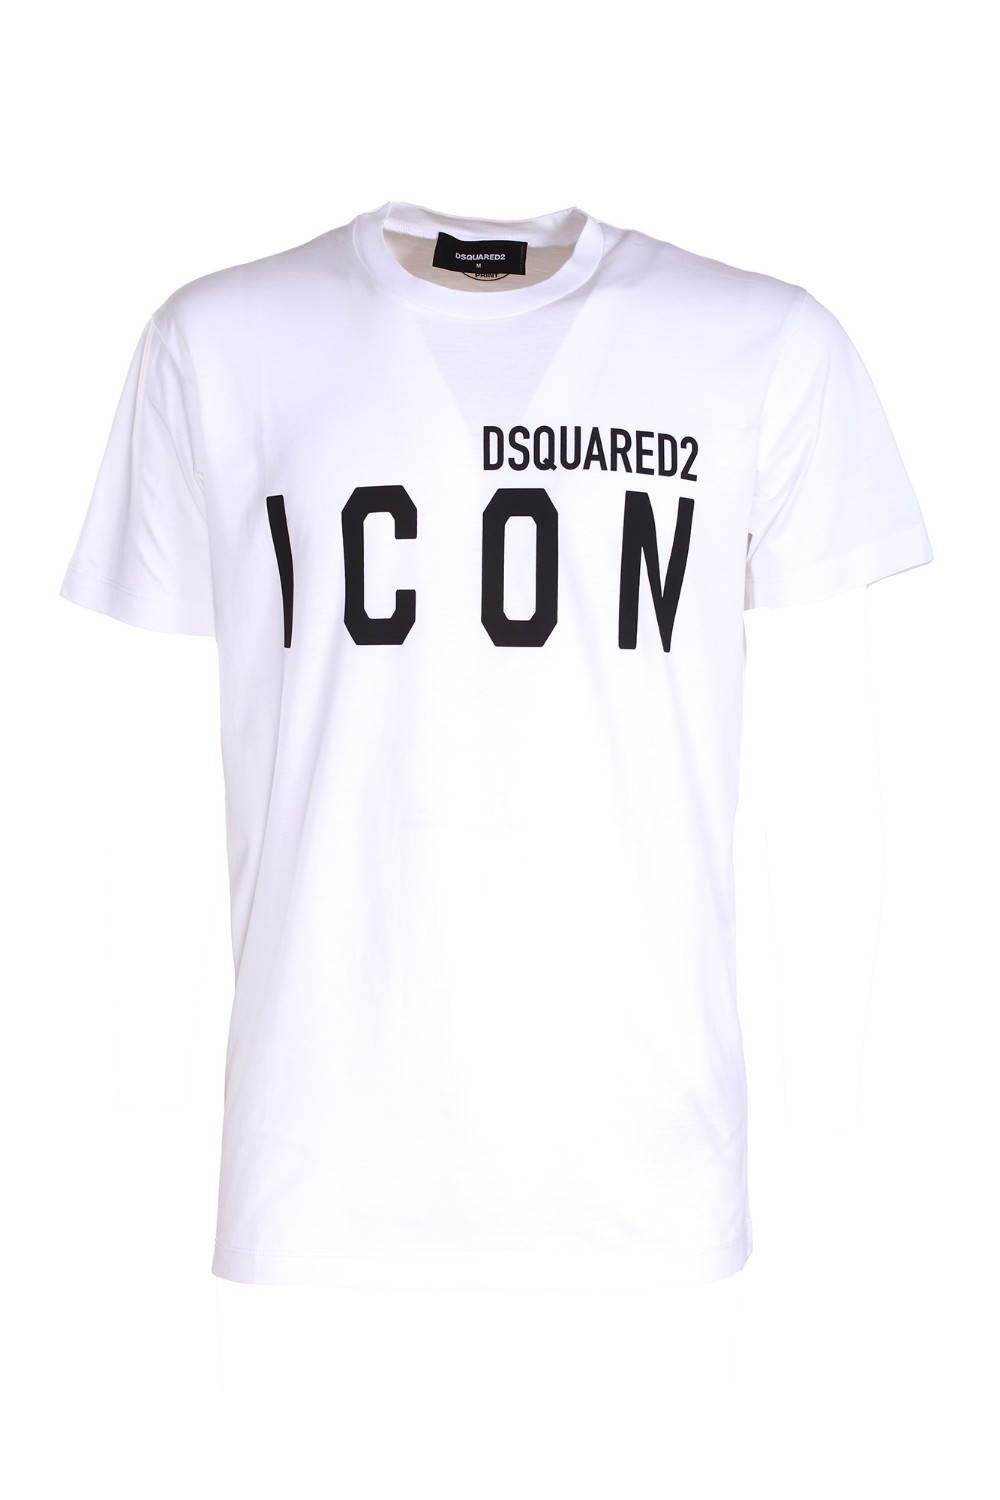 shop DSQUARED2  T-shirt: DSQUARED2 T-Shirt girocollo in jersey di cotone.
Vestibilità slim.
Maniche corte.
Stampa lettering "DSQUARED2 ICON" sul davanti.
Composizione: 100% cotone.
Made in Romania.. S79GC0003 S23009-989 number 9775854